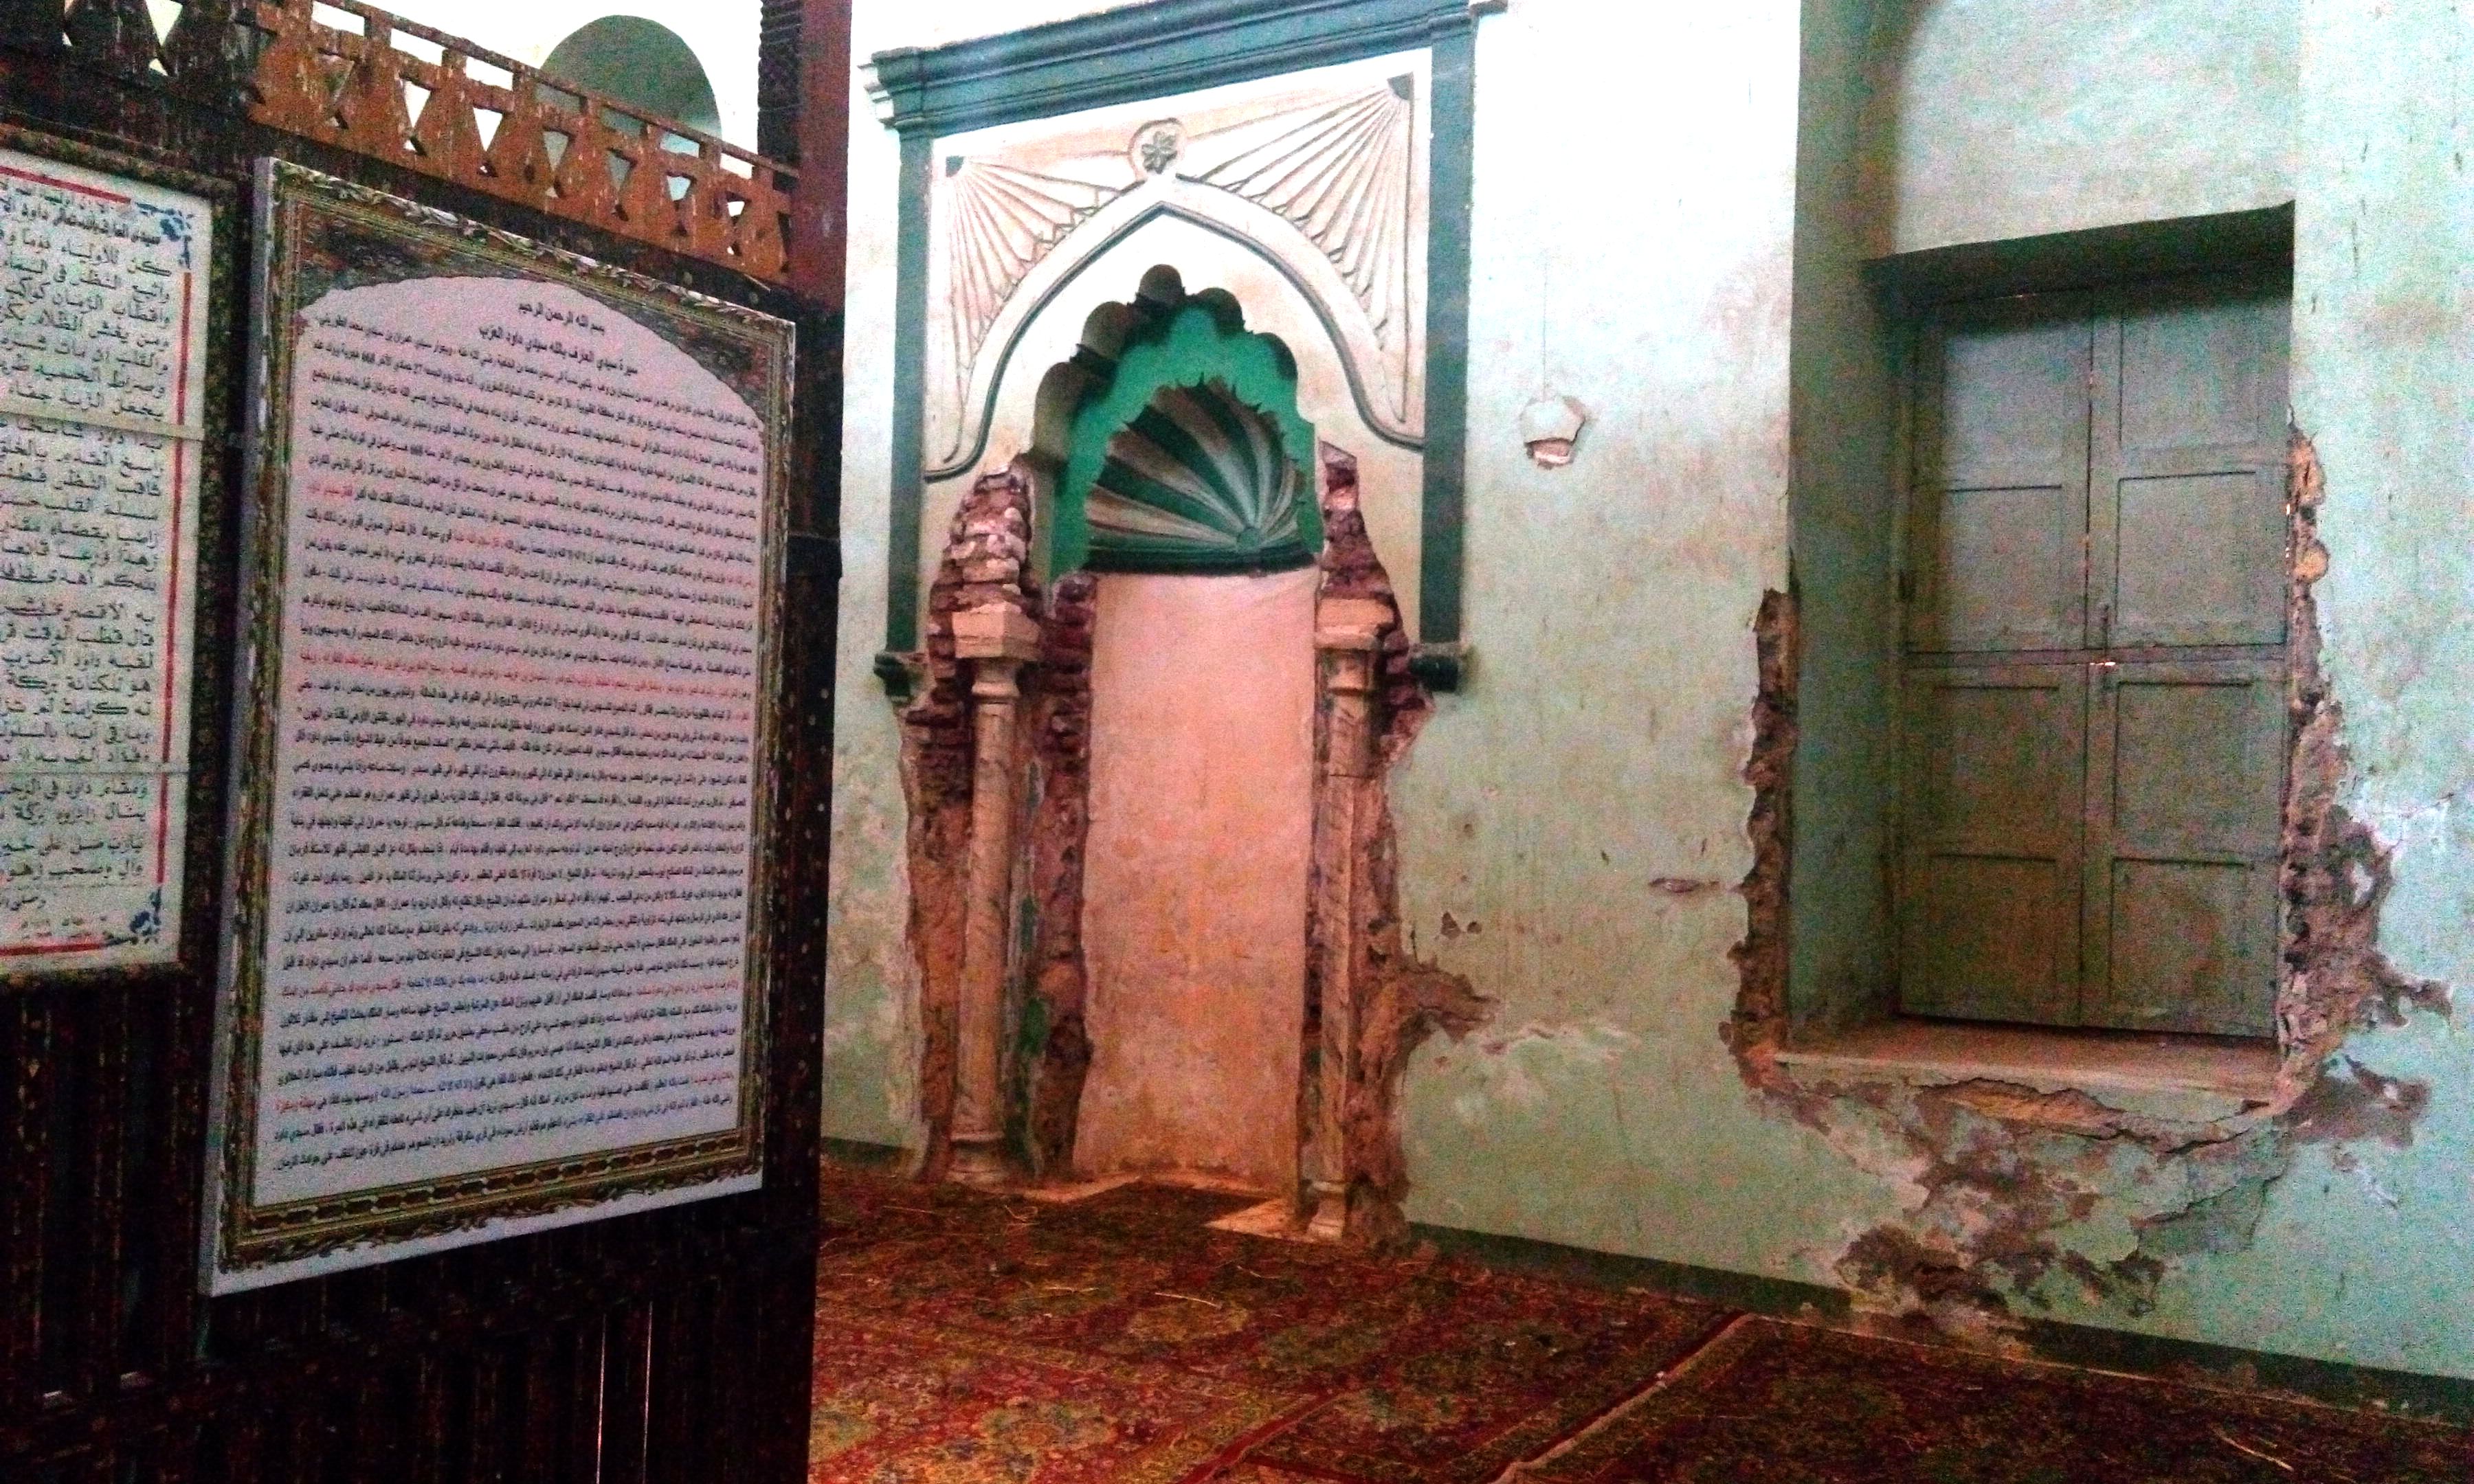  مسجد سيدى داود العزب بالغربية (7)